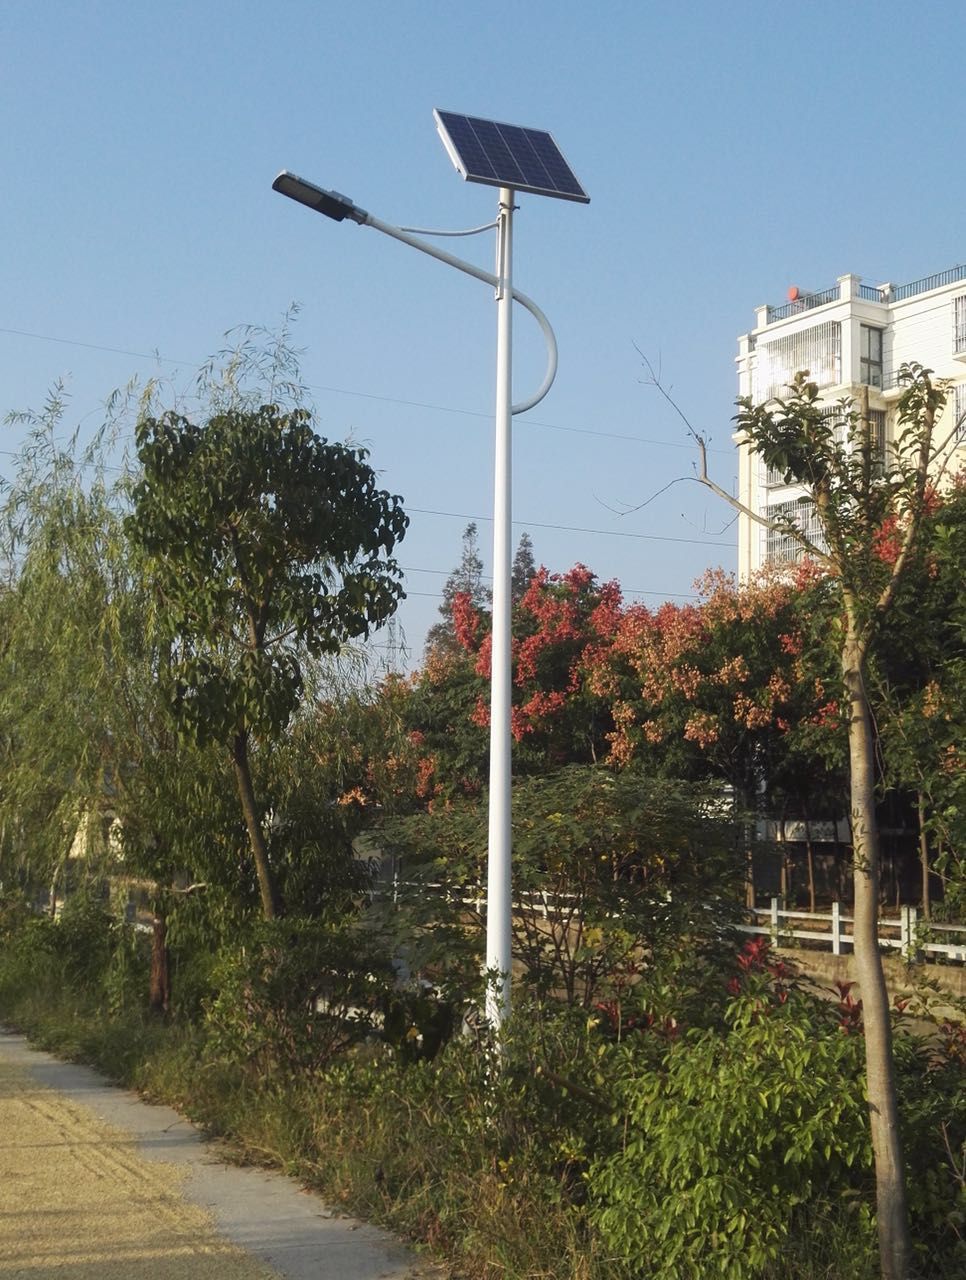 新农村改造太阳能路灯